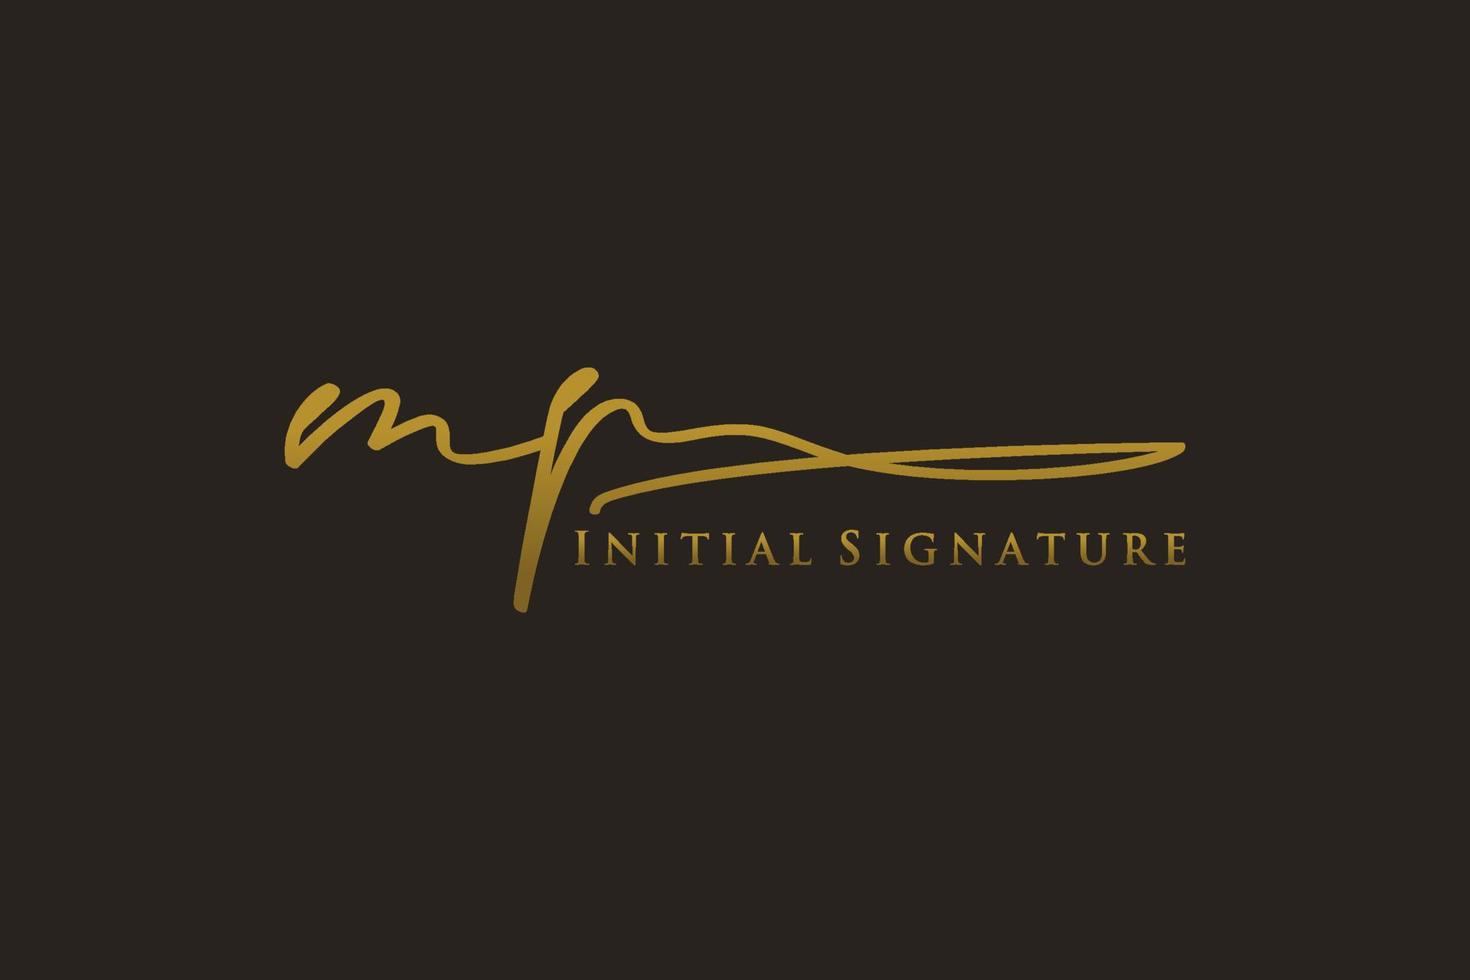 anfängliches mp-briefsignatur-logo-vorlage elegantes design-logo. hand gezeichnete kalligraphiebeschriftungsvektorillustration. vektor